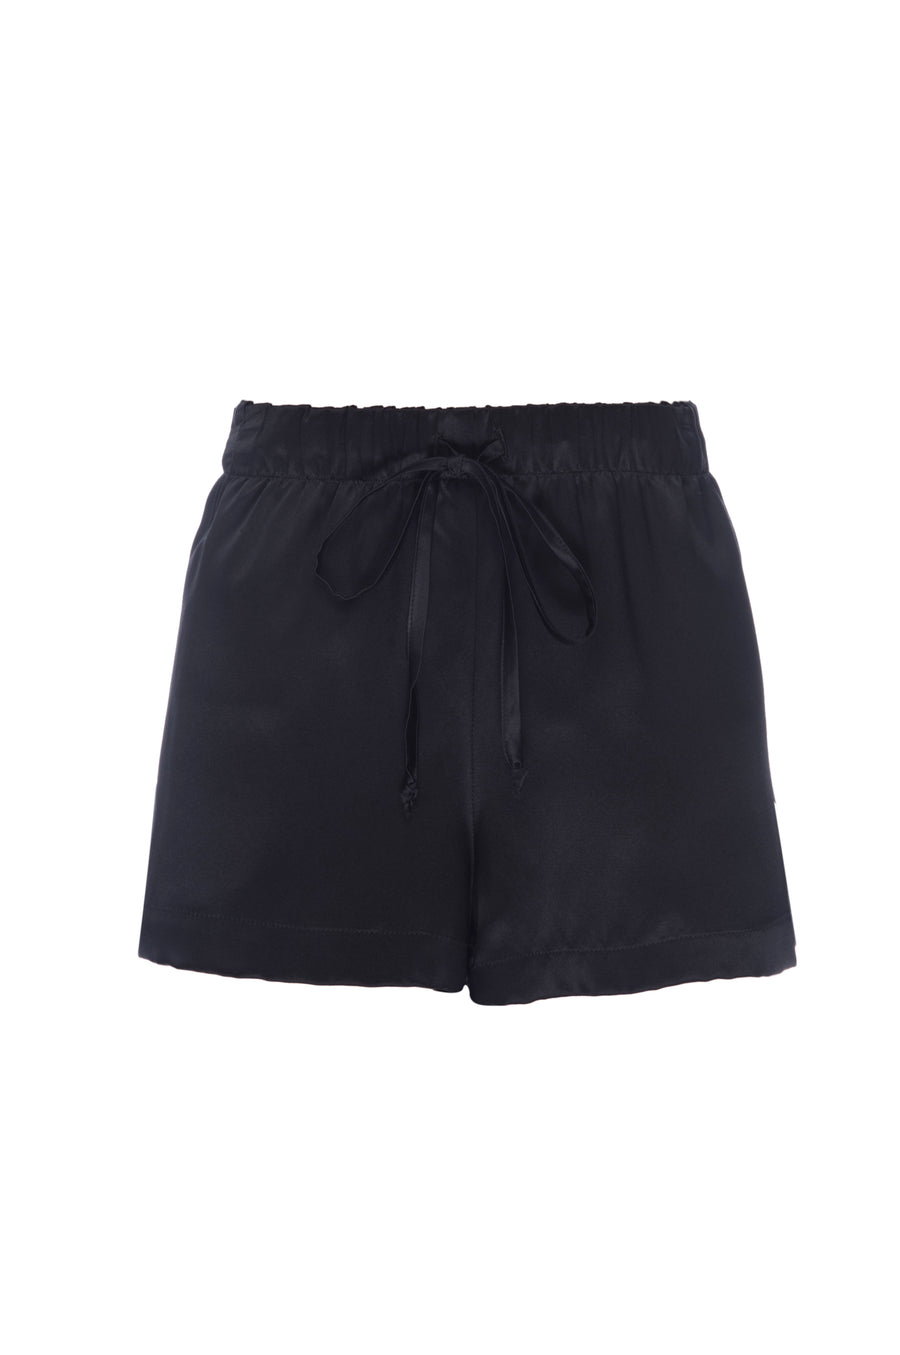 Silk Charmeuse Shorts: Black